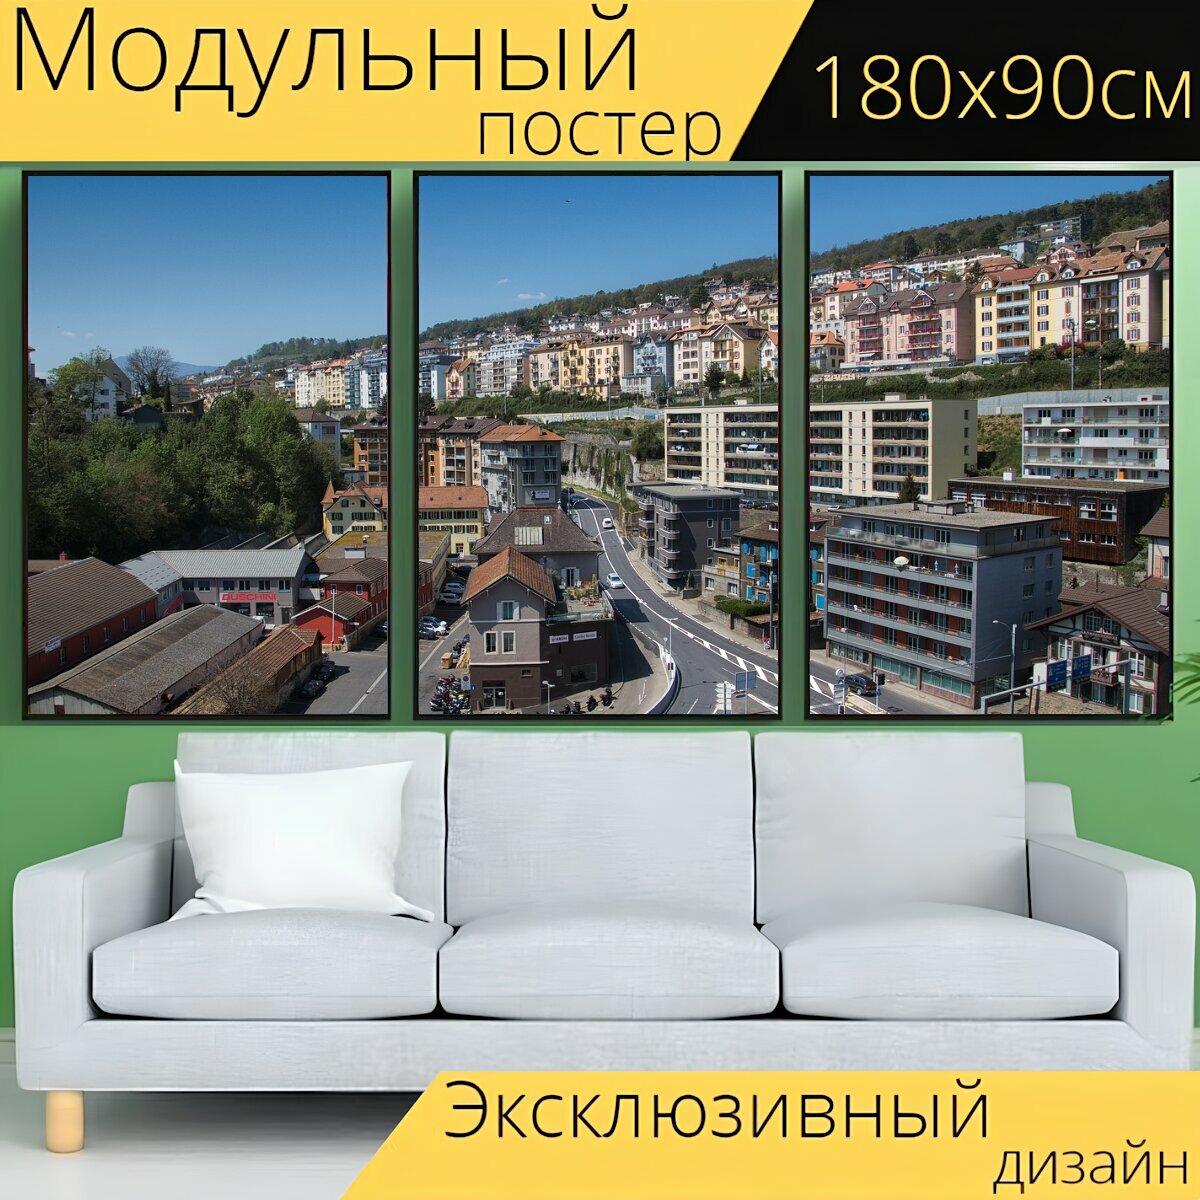 Модульный постер "Город, город фотографии, городской пейзаж" 180 x 90 см. для интерьера